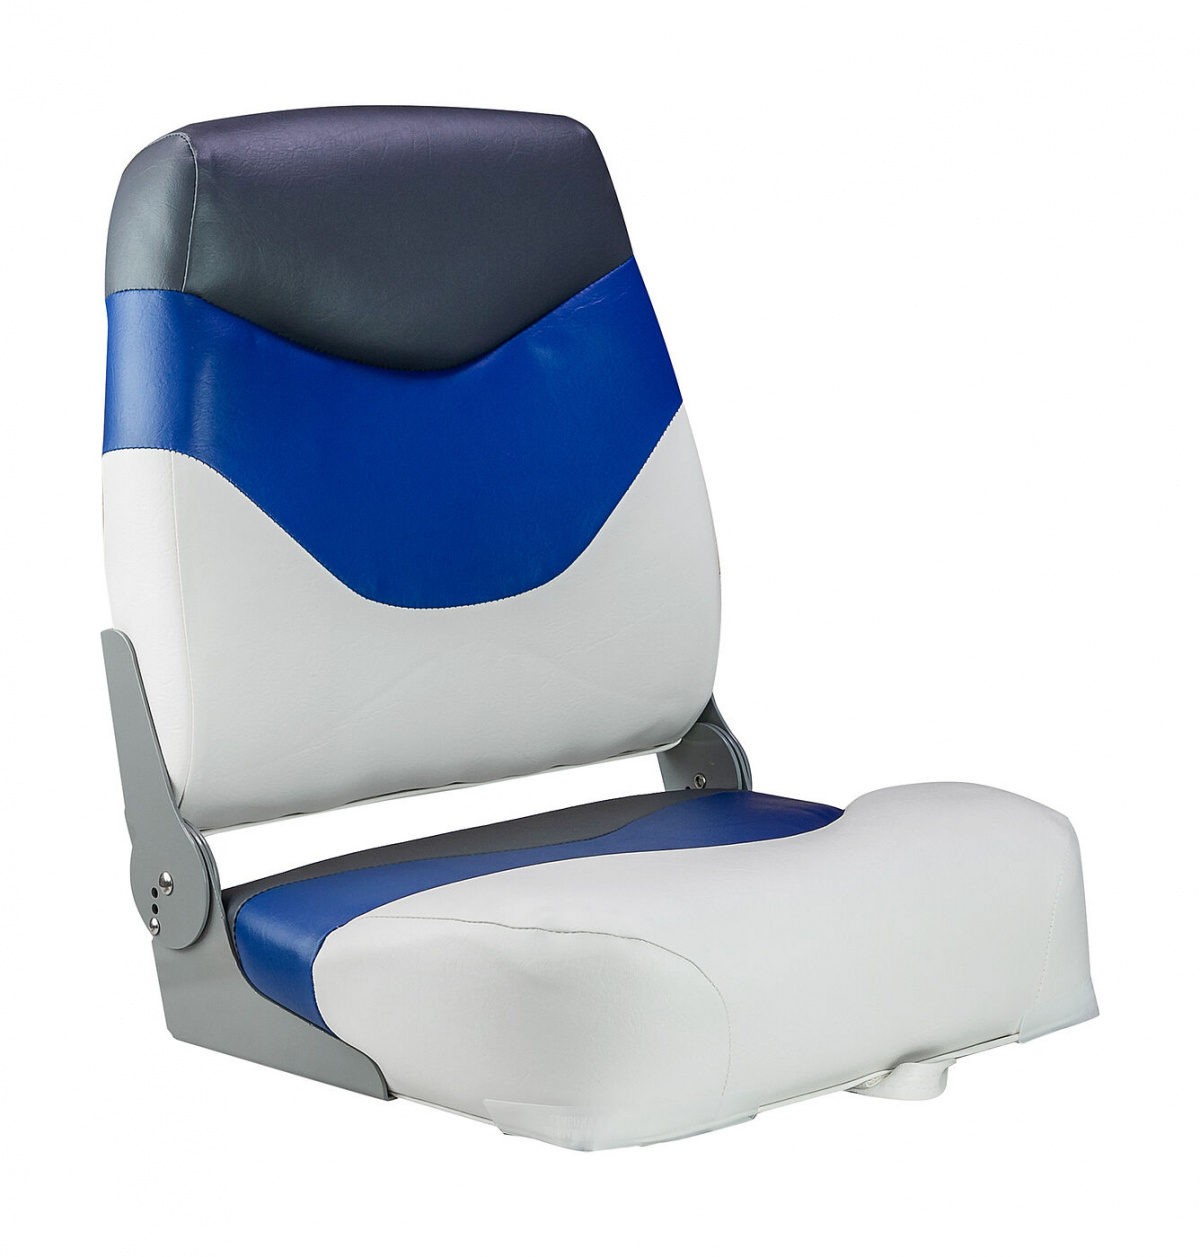 Кресло мягкое складное Premium, обивка винил, цвет белый/синий/угольный, Marine Rocket, 889-7697